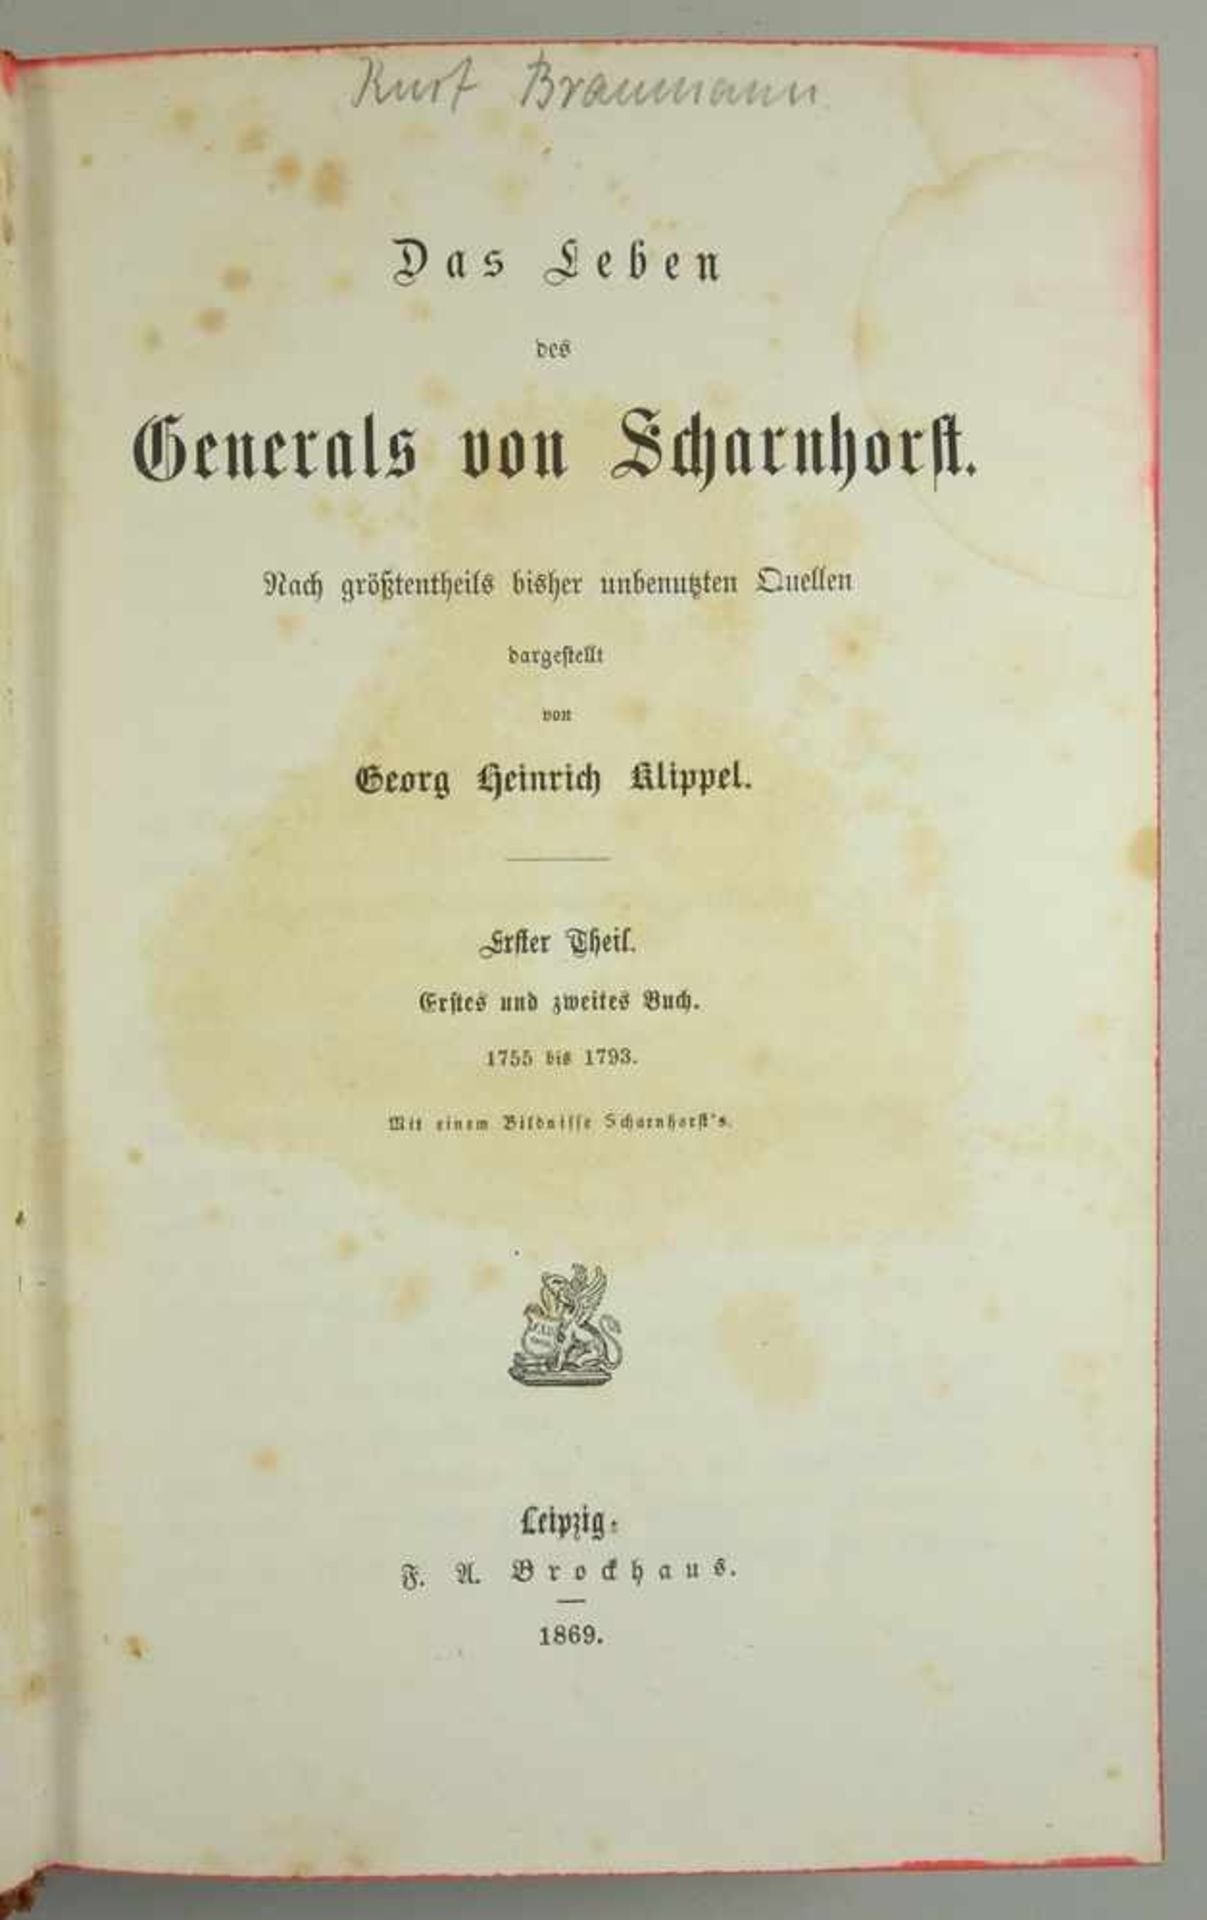 Das Leben des Generals von Scharhorst, 3 Theile in einem Band, 1869 von Georg Heinrich Klippel, - Image 3 of 3